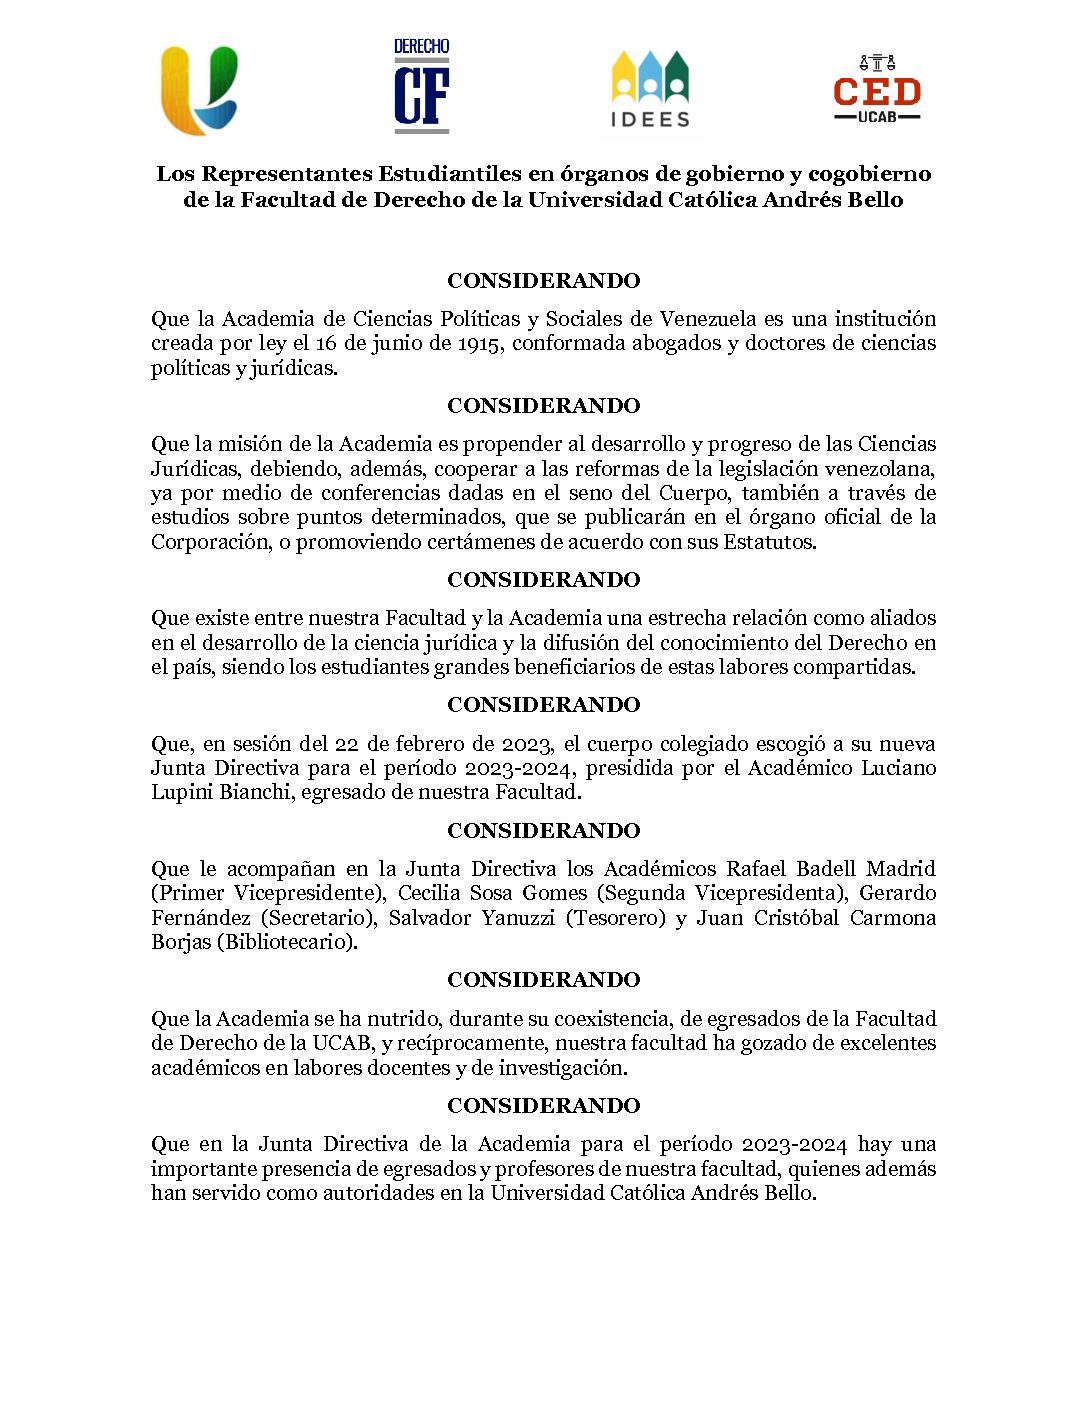 Acuerdo de los Representantes Estudiantiles en órganos de gobierno y cogobierno de la Facultad de Derecho de la Universidad Católica Andrés Bello